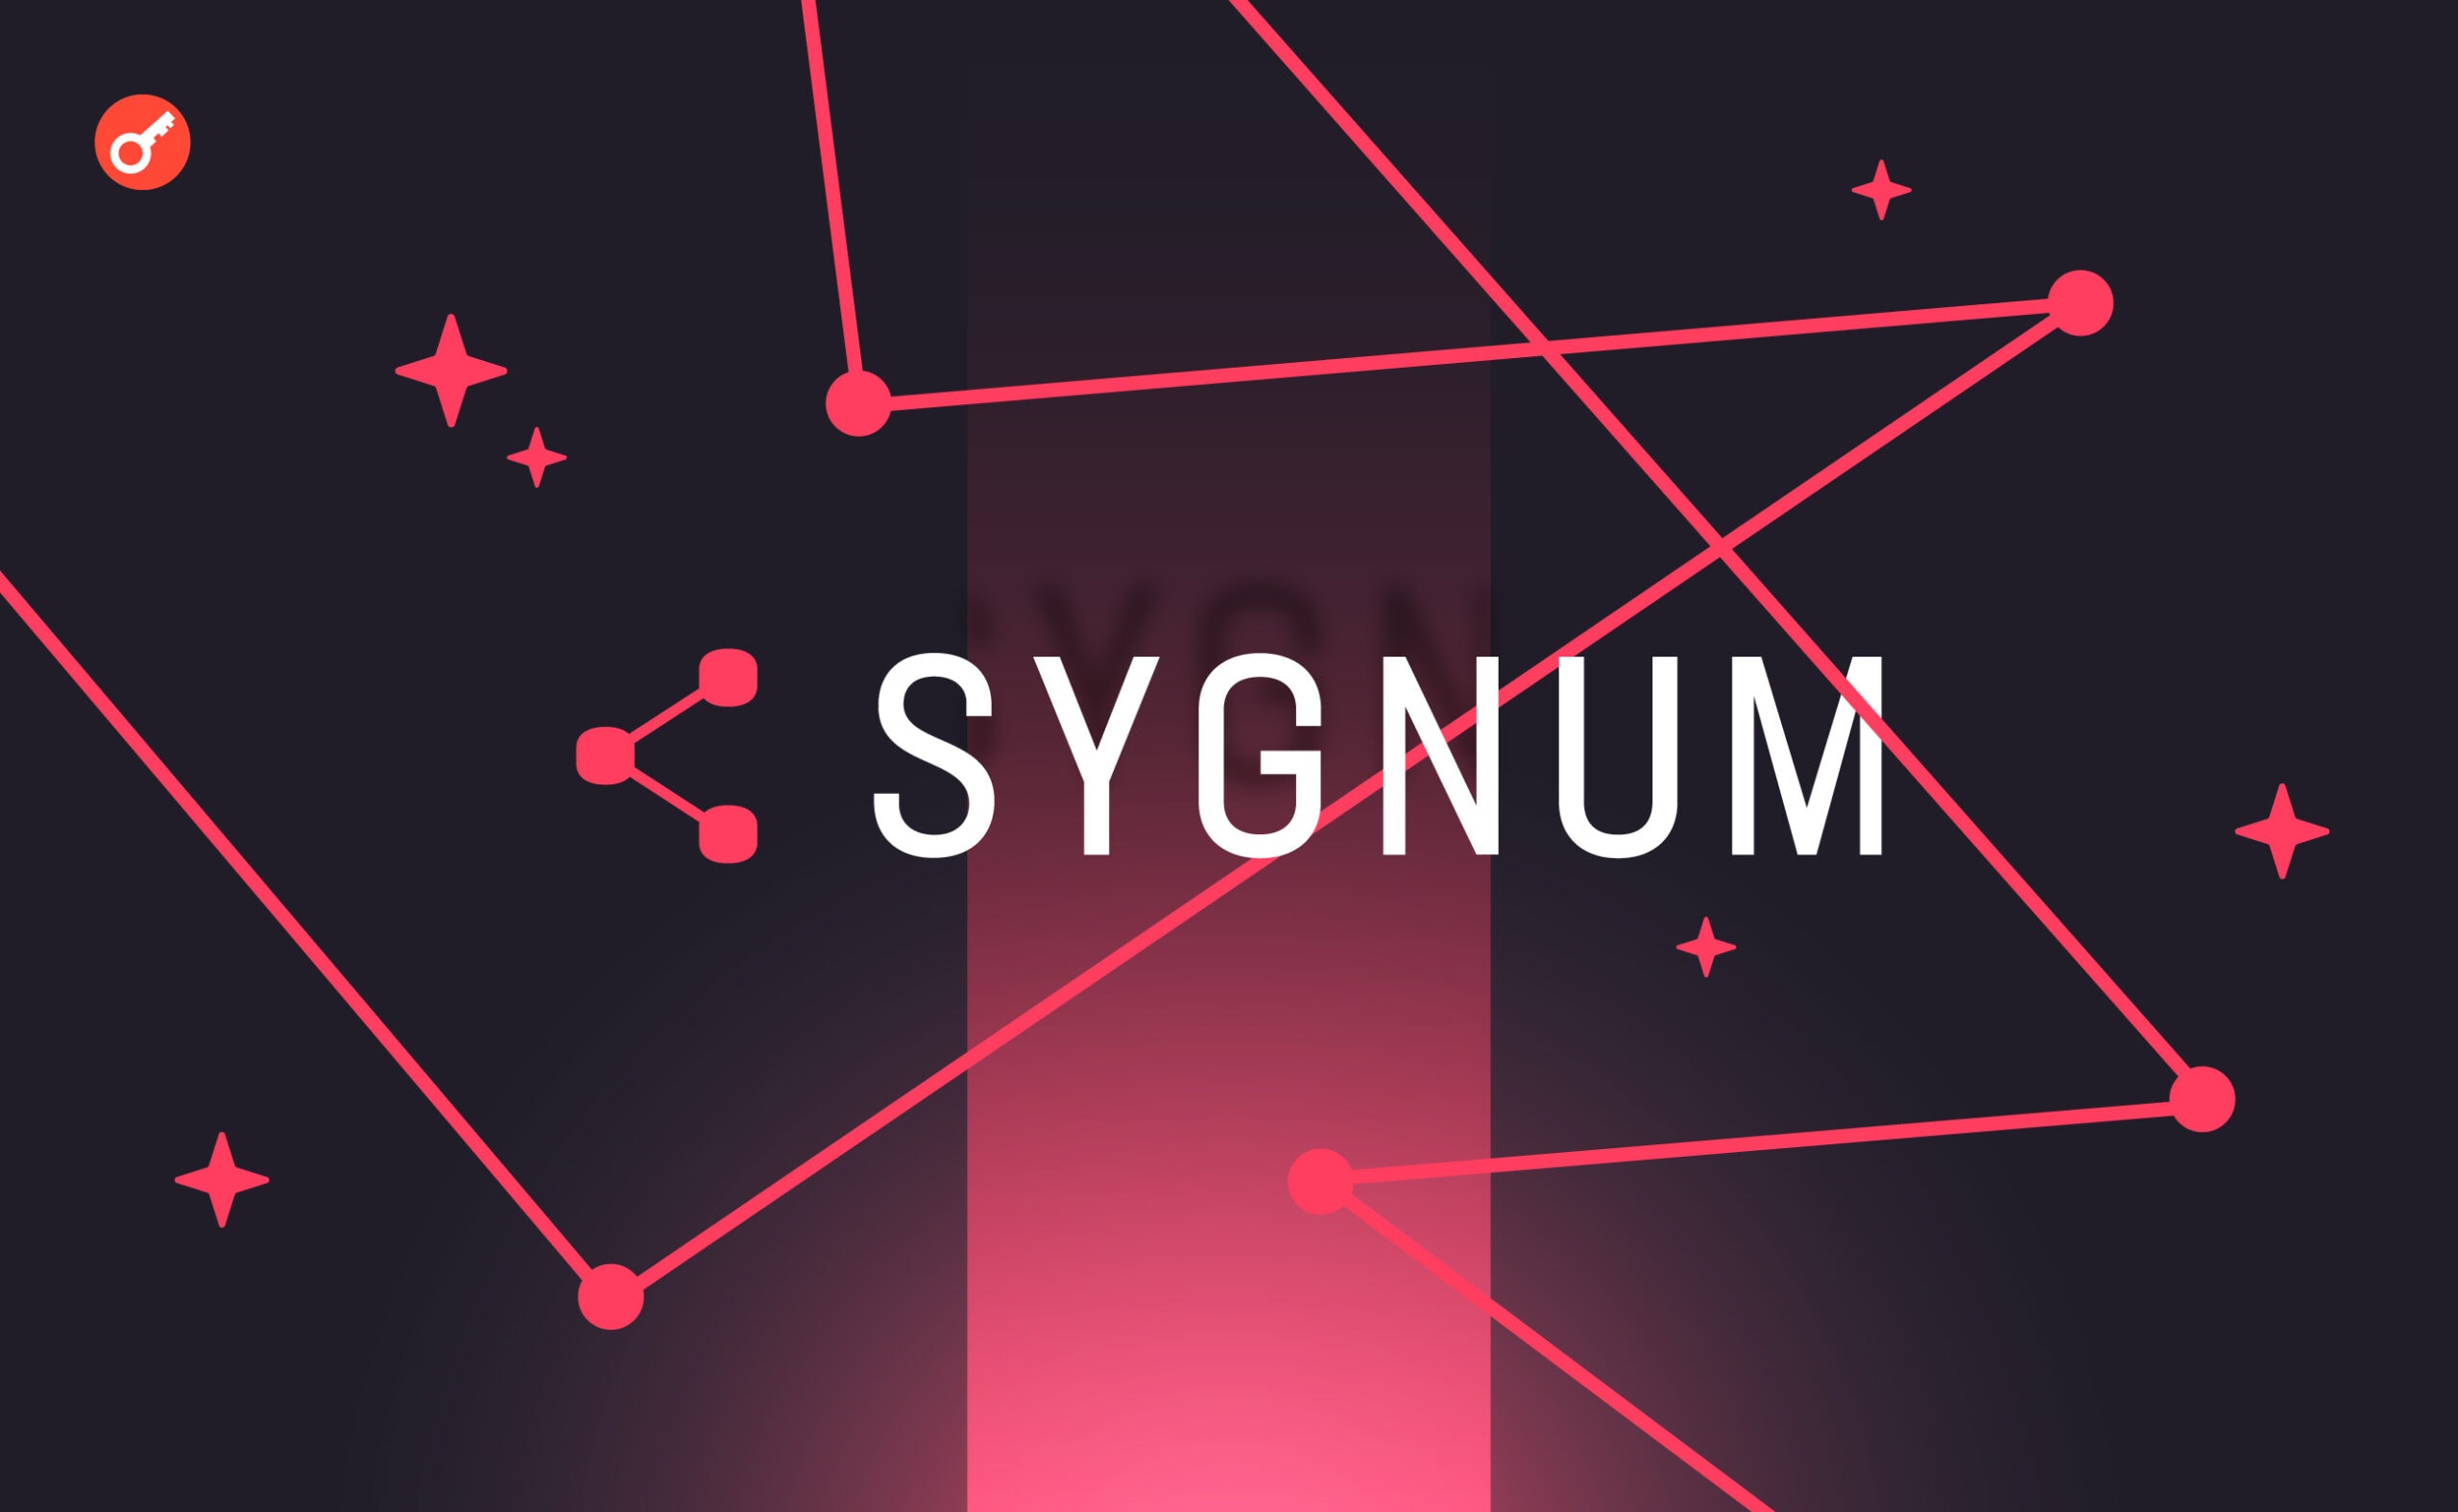 Криптобанк Sygnum залучив $40 млн і наблизився до статусу єдинорога. Головний колаж новини.